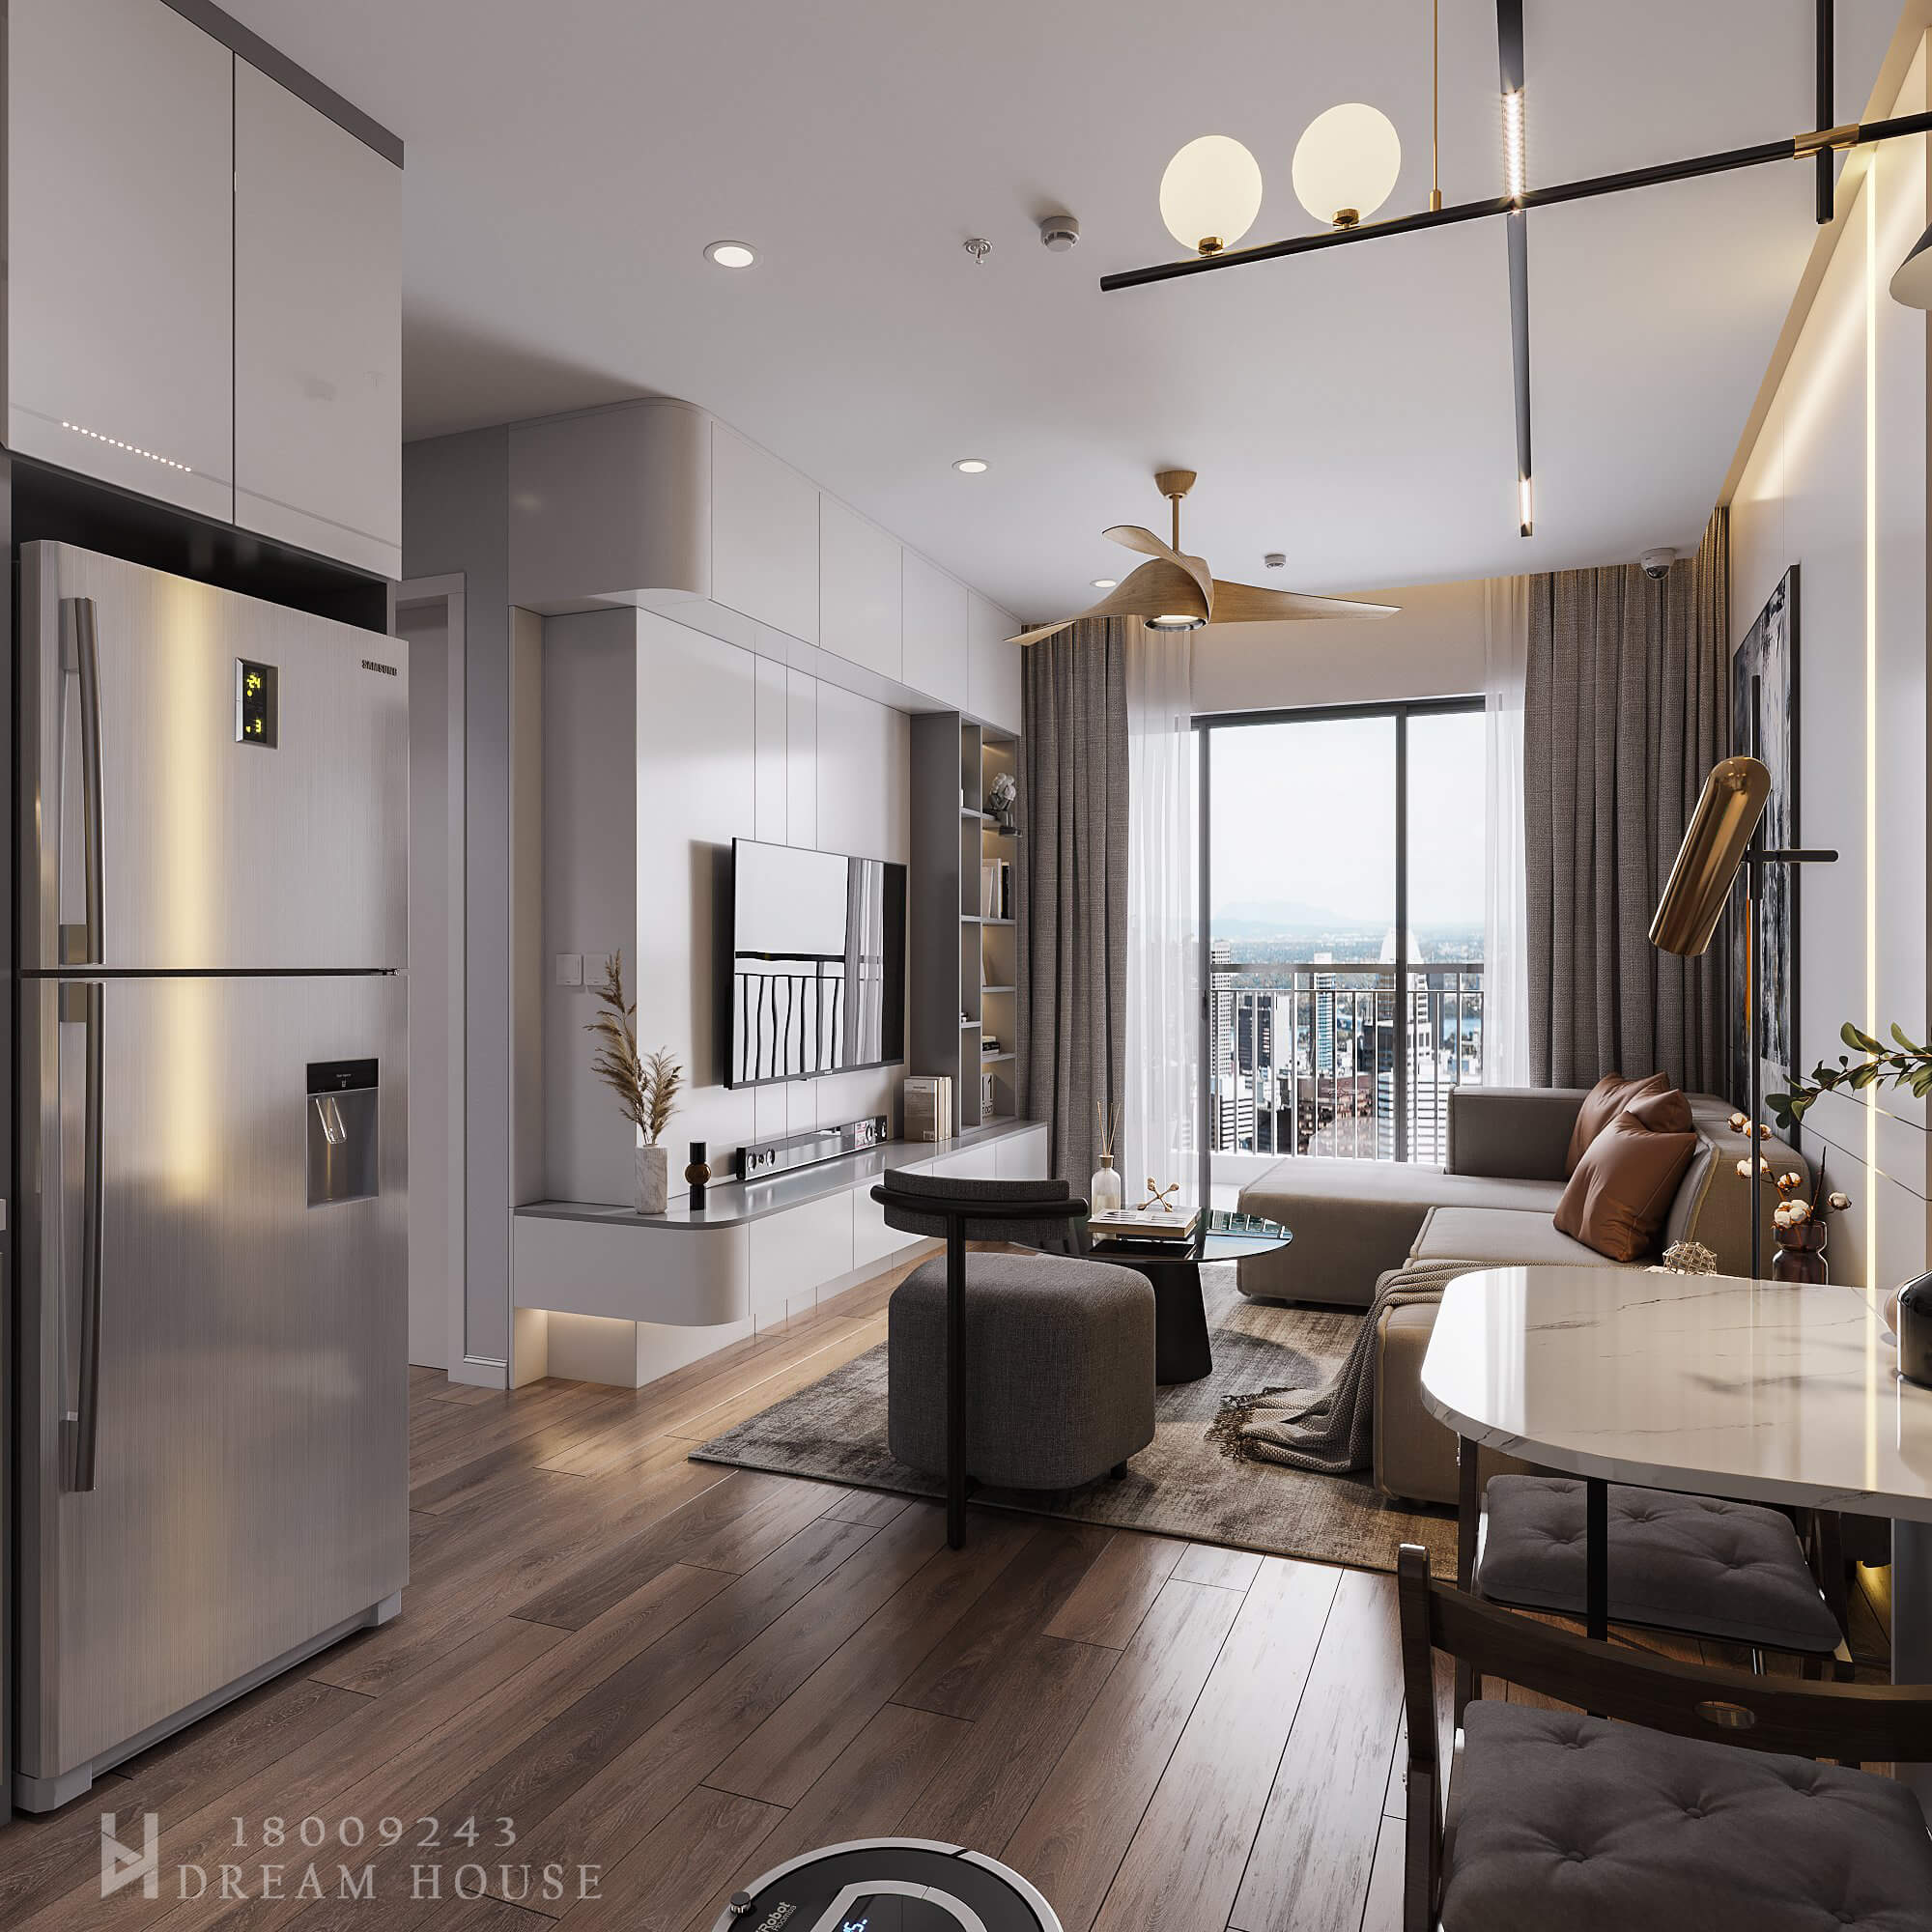 Thiết kế nội thất chung cư D Capitale luôn được cập nhật theo xu hướng của năm 2024, cho ra đời các thiết kế nội thất đẹp và hiện đại. Cùng với sự tận tâm và nhiệt huyết của đội ngũ kiến trúc sư chuyên nghiệp, chắc chắn sẽ mang đến cho bạn một không gian sống vừa sang trọng, vừa tiện nghi và đầy đủ tiện ích.